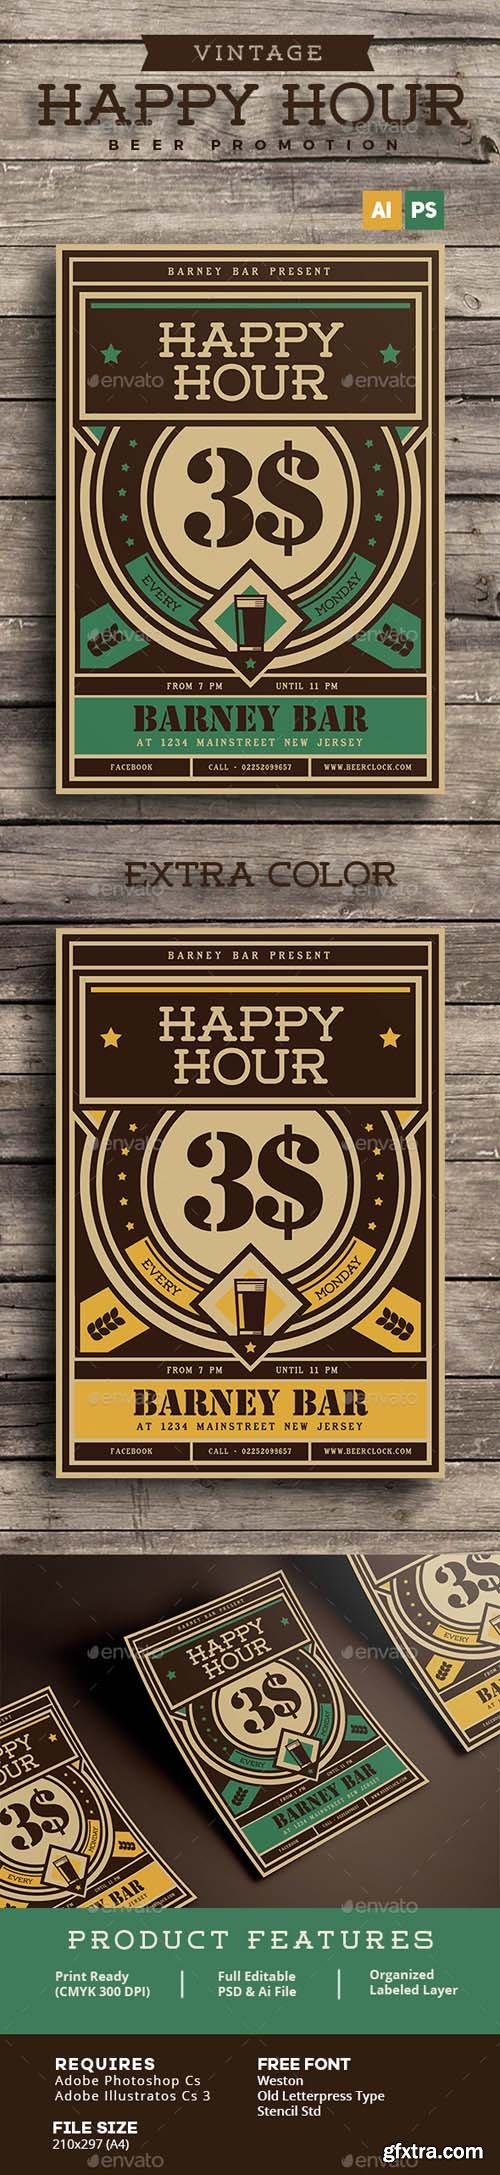 GR - Vintage Happy Hour Beer Promotion 15328385